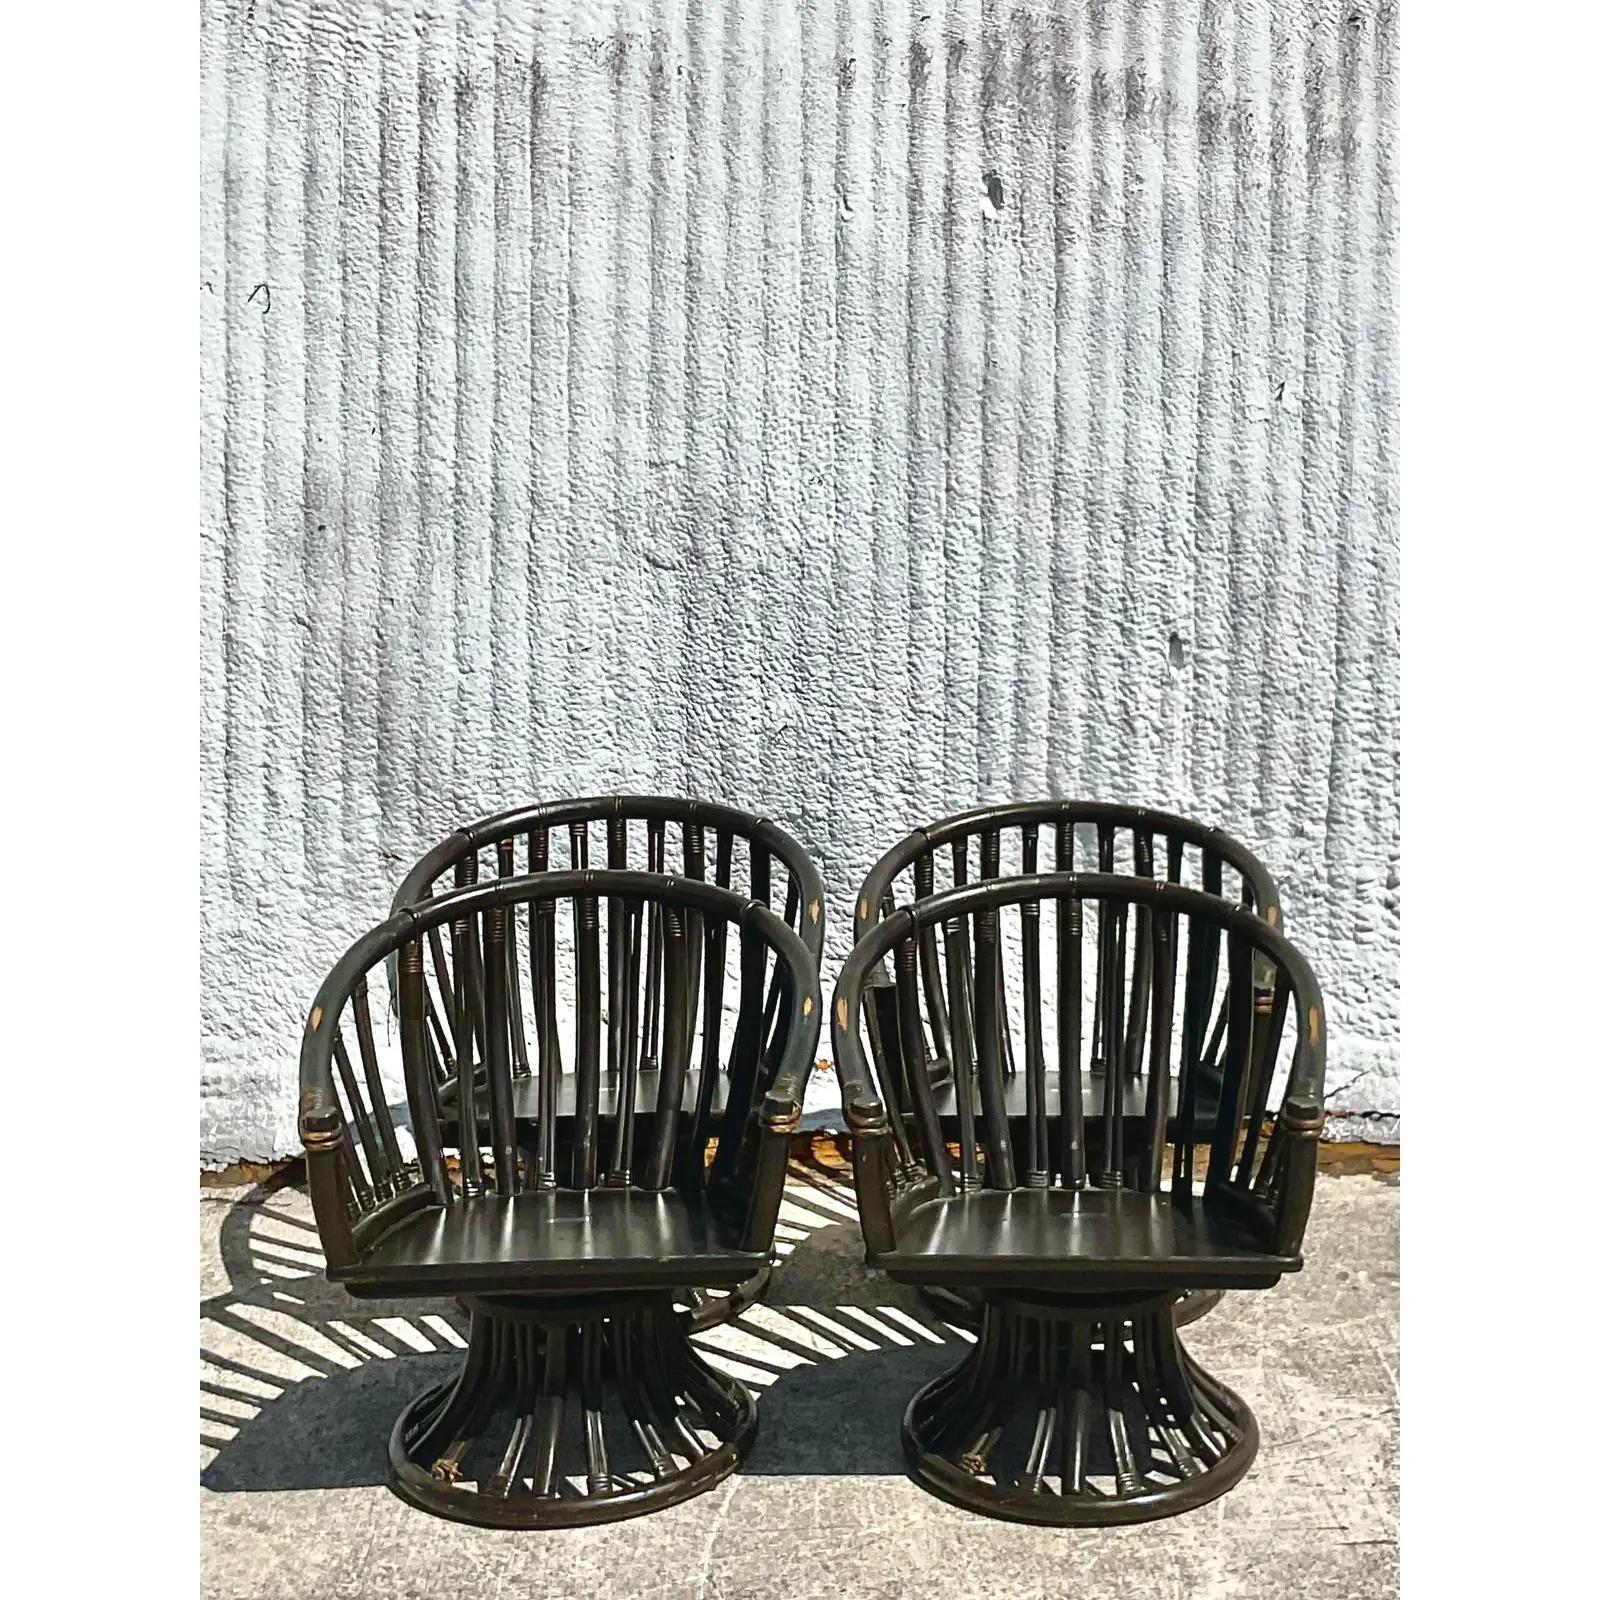 Fantastique ensemble de quatre chaises pivotantes vintage de la marque Coastal. Fabriqué par le groupe iconique Ficks Reed. Rotin lourd d'un brun ébène profond. Design/One chic avec un look super chic. Acquis d'une propriété de Palm Beach.